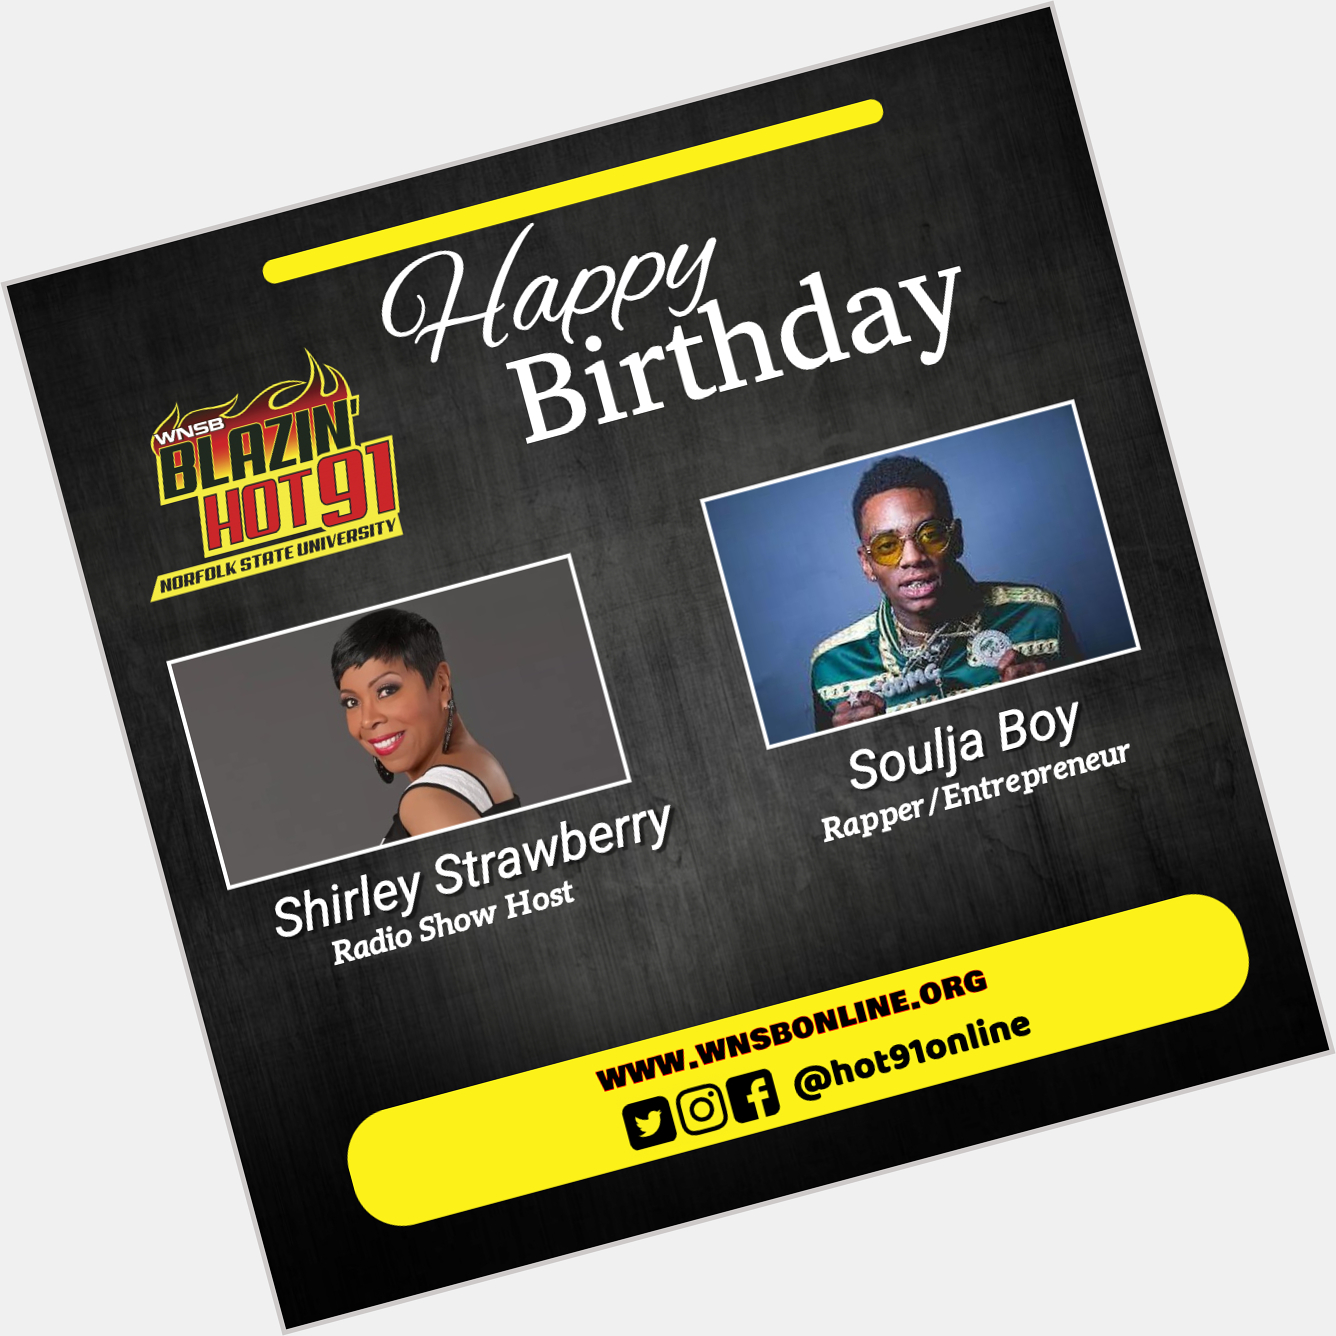 Happy Blazin\ Hot Birthday to Shirley Strawberry & Soulja Boy  